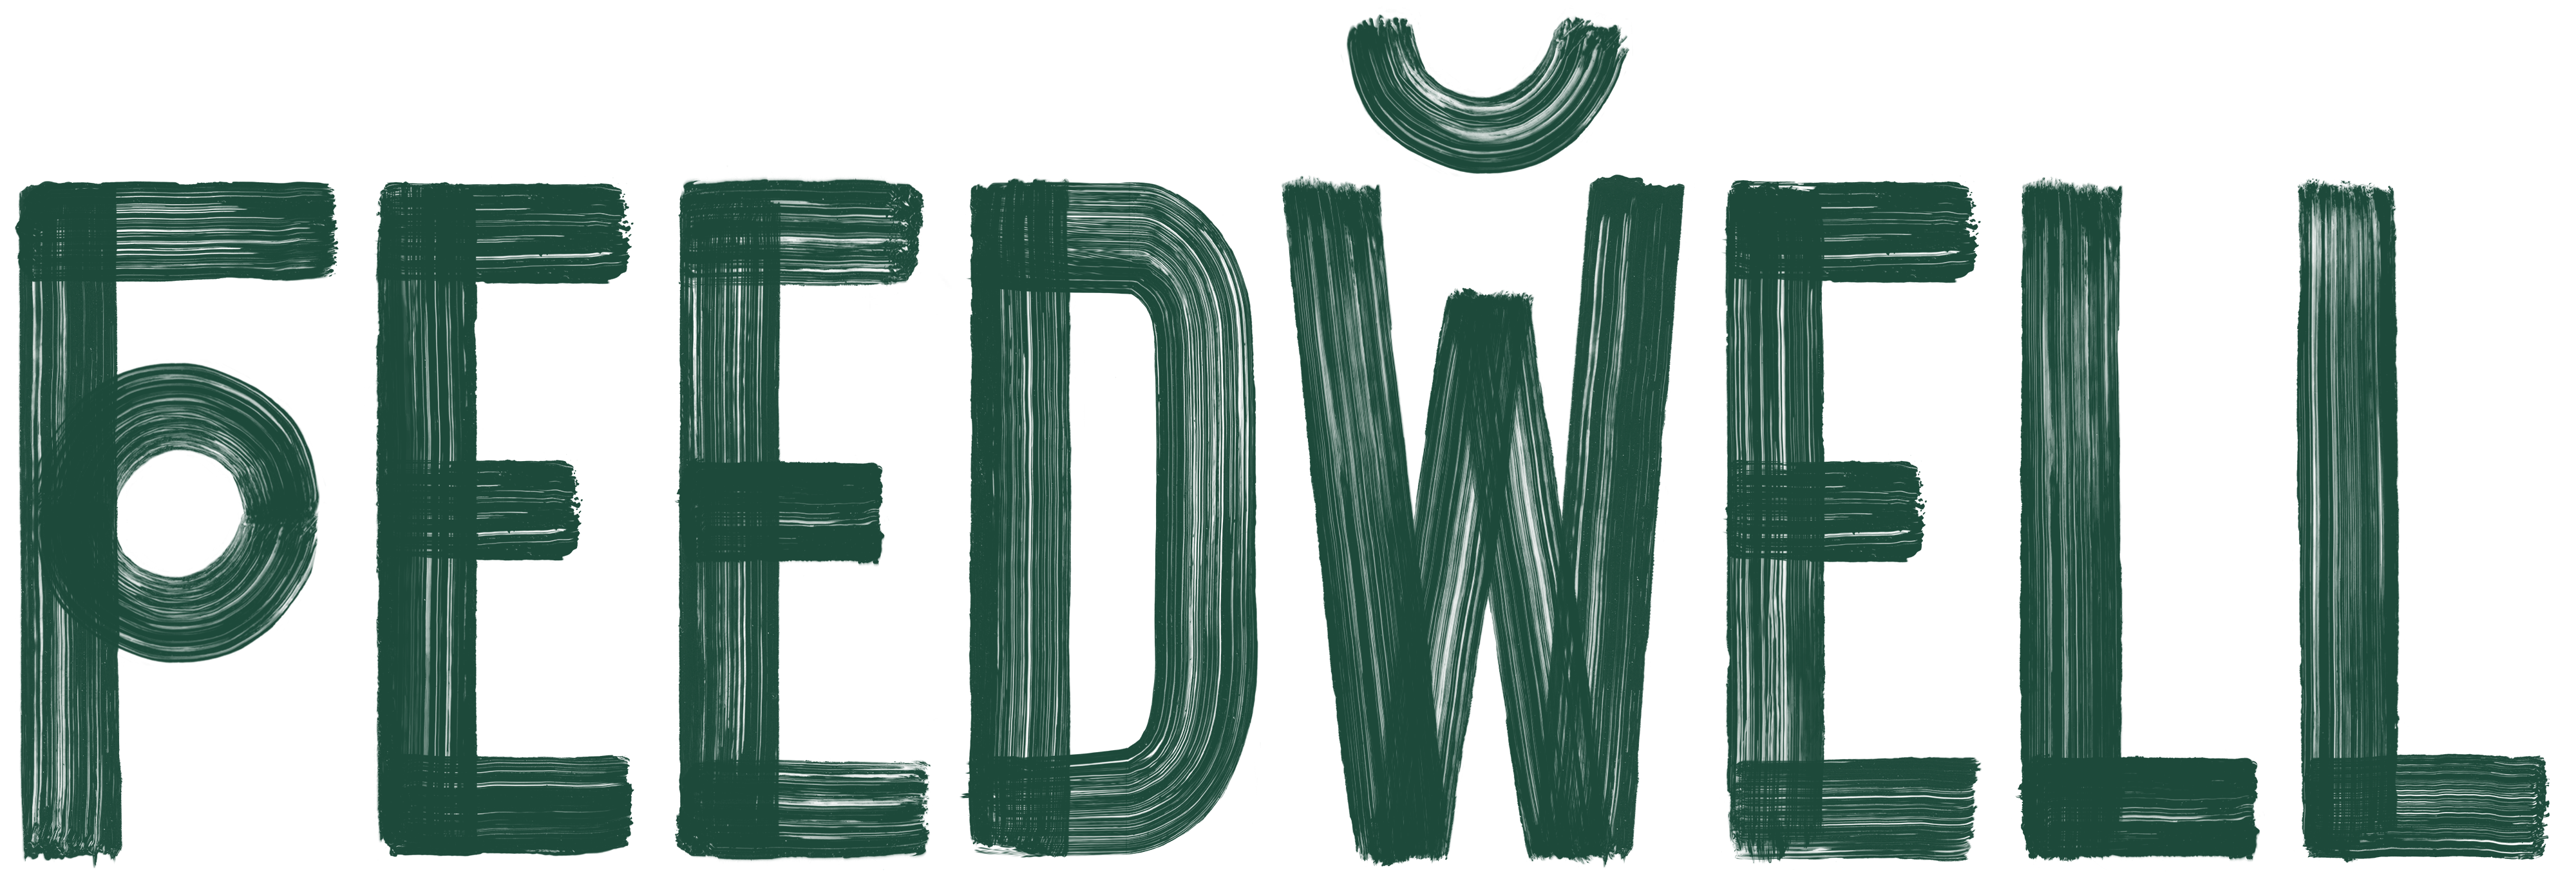 Feedwell_Logo_FINAL